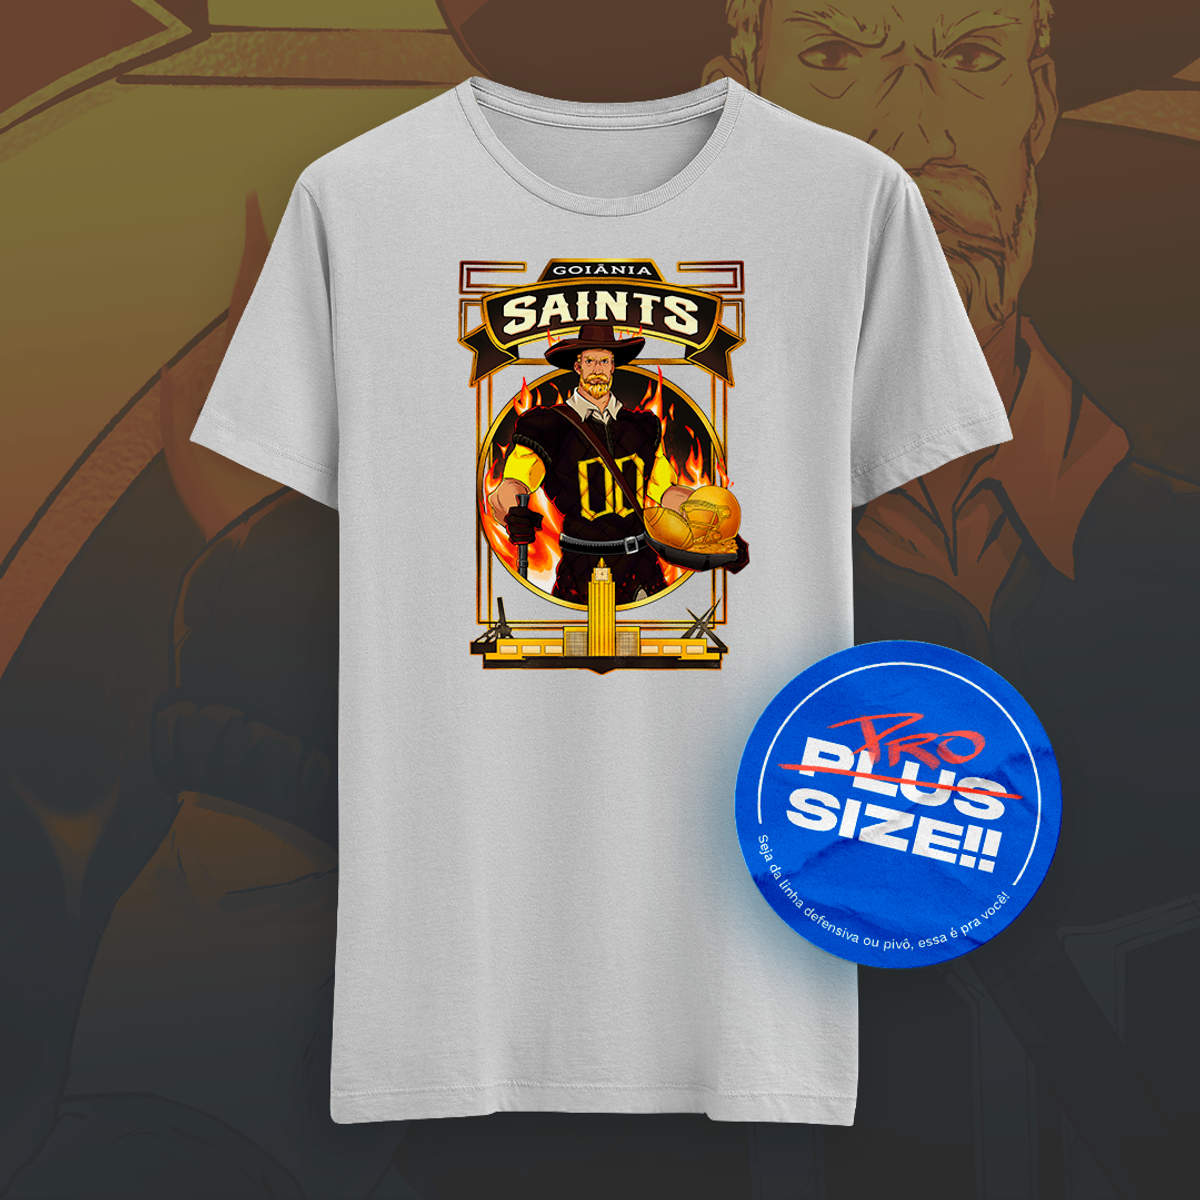 Nome do produto: Goiânia Saints FA (Plus Size)